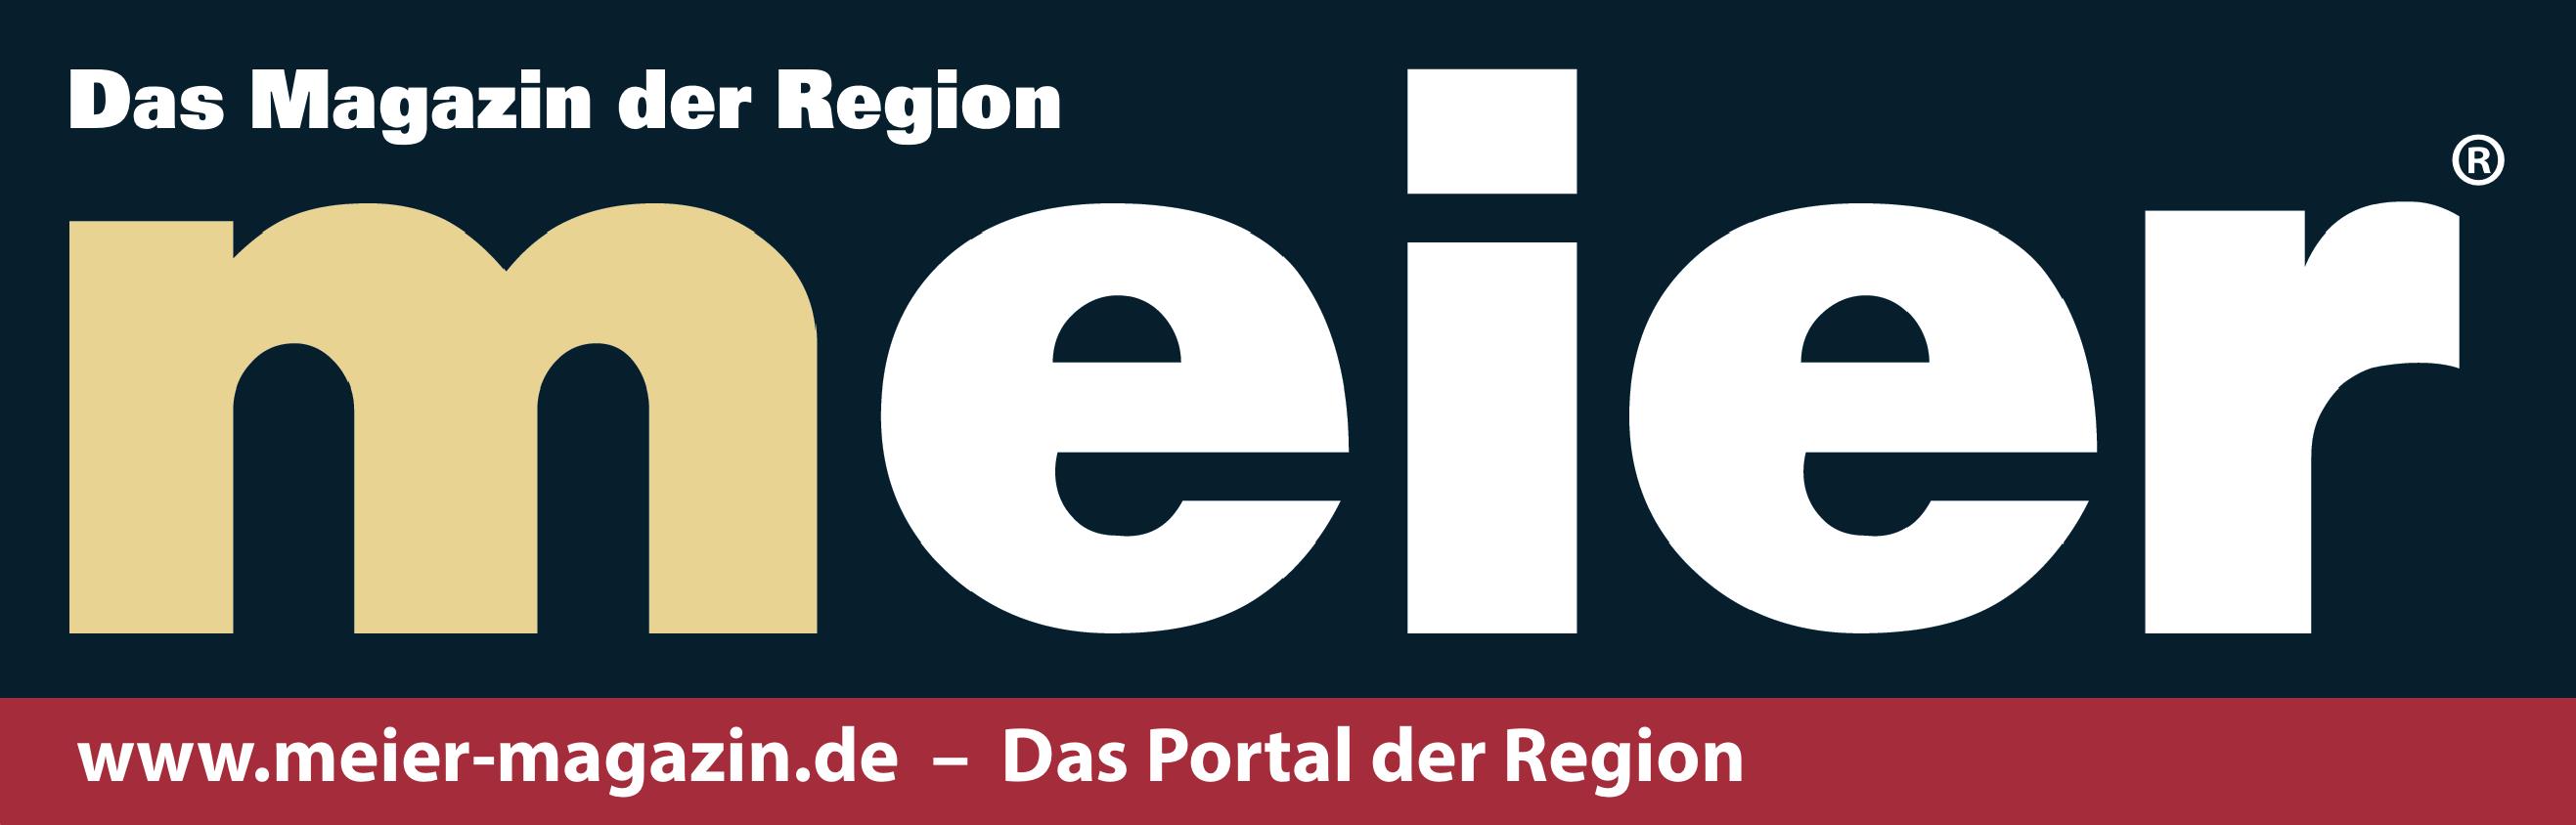 Logo Meier-Magazin